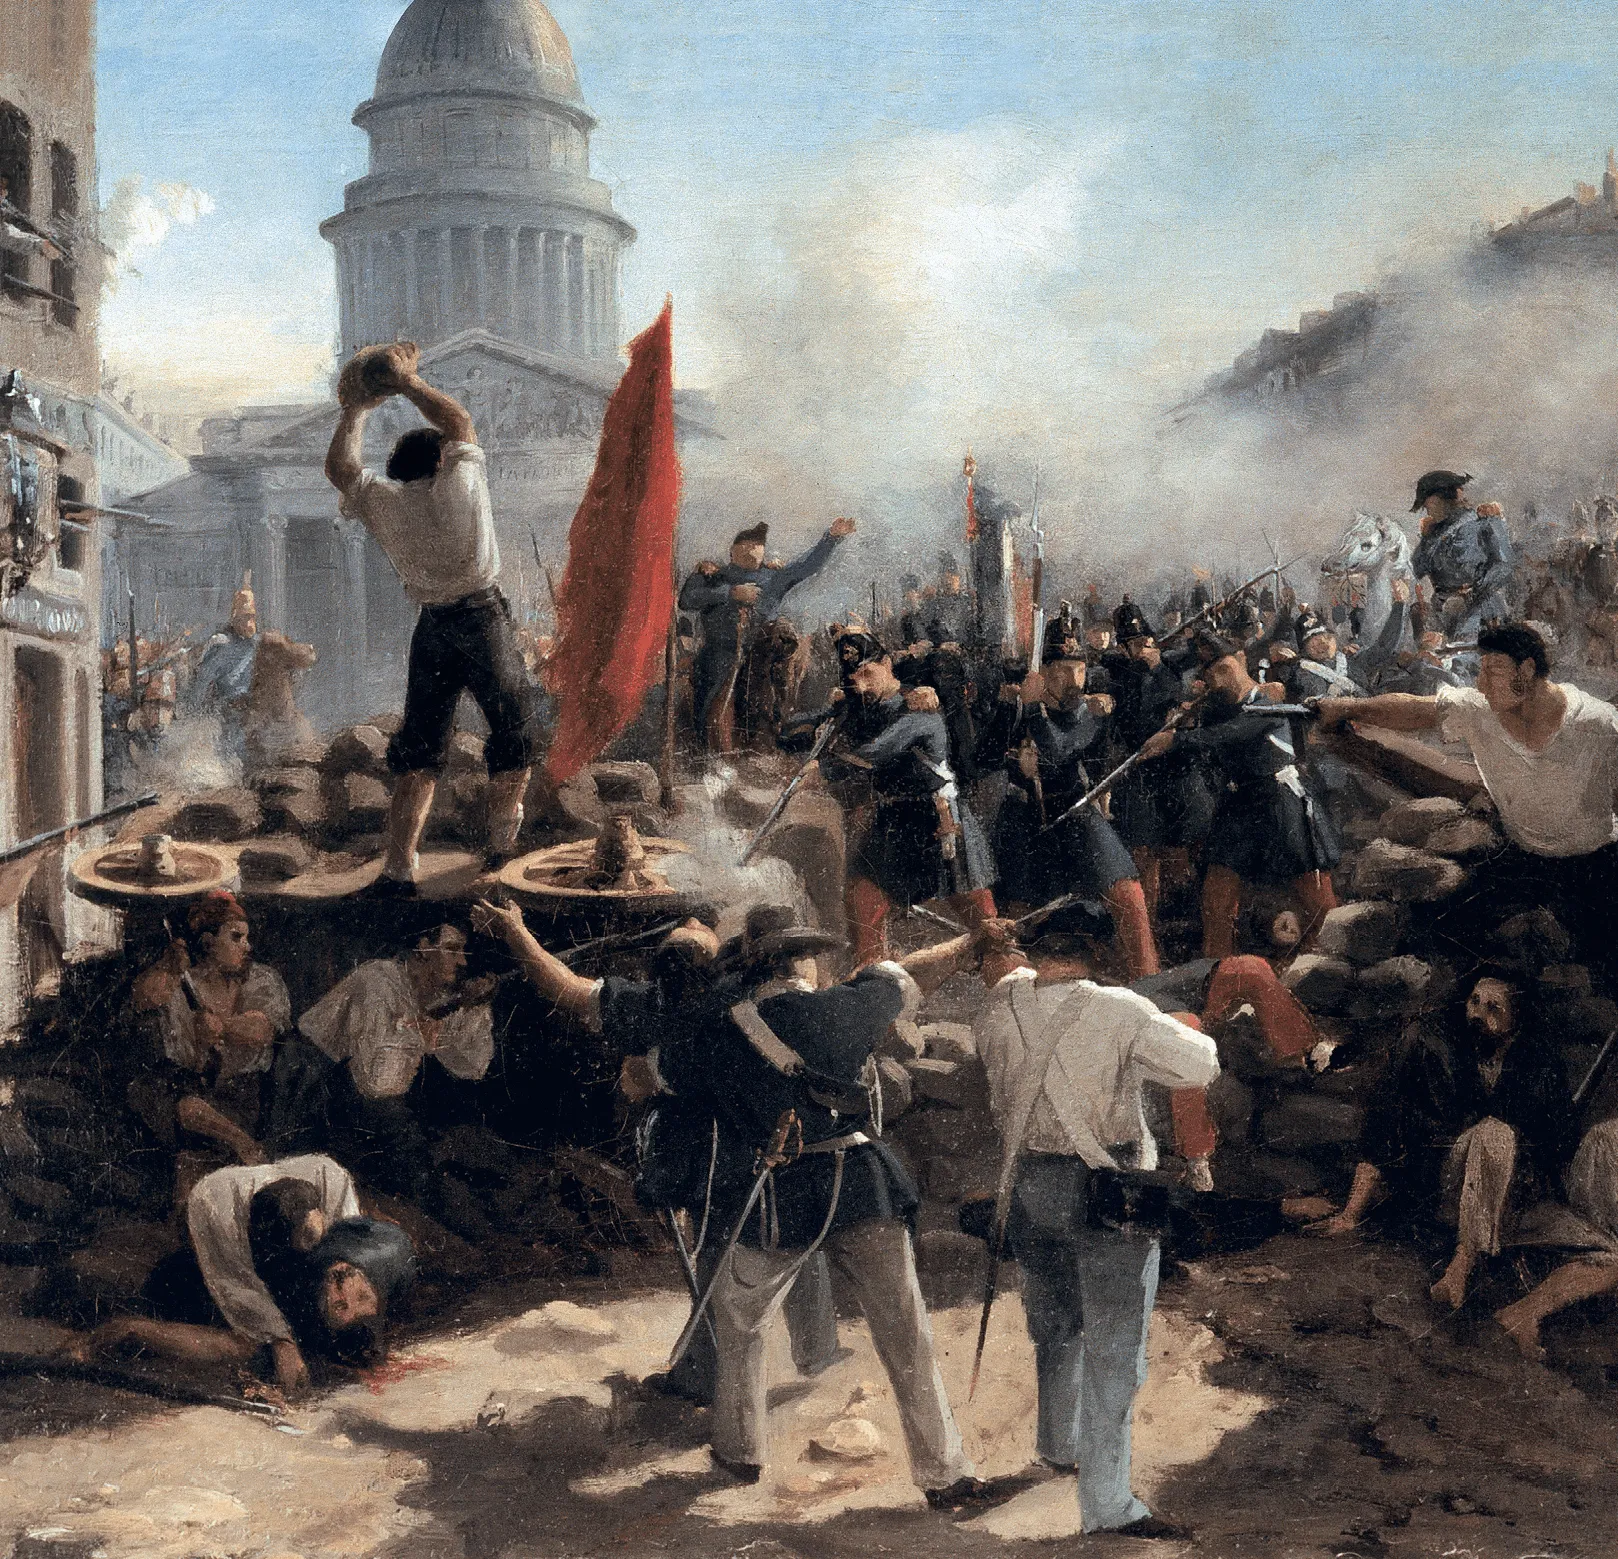 La révolution de 1848